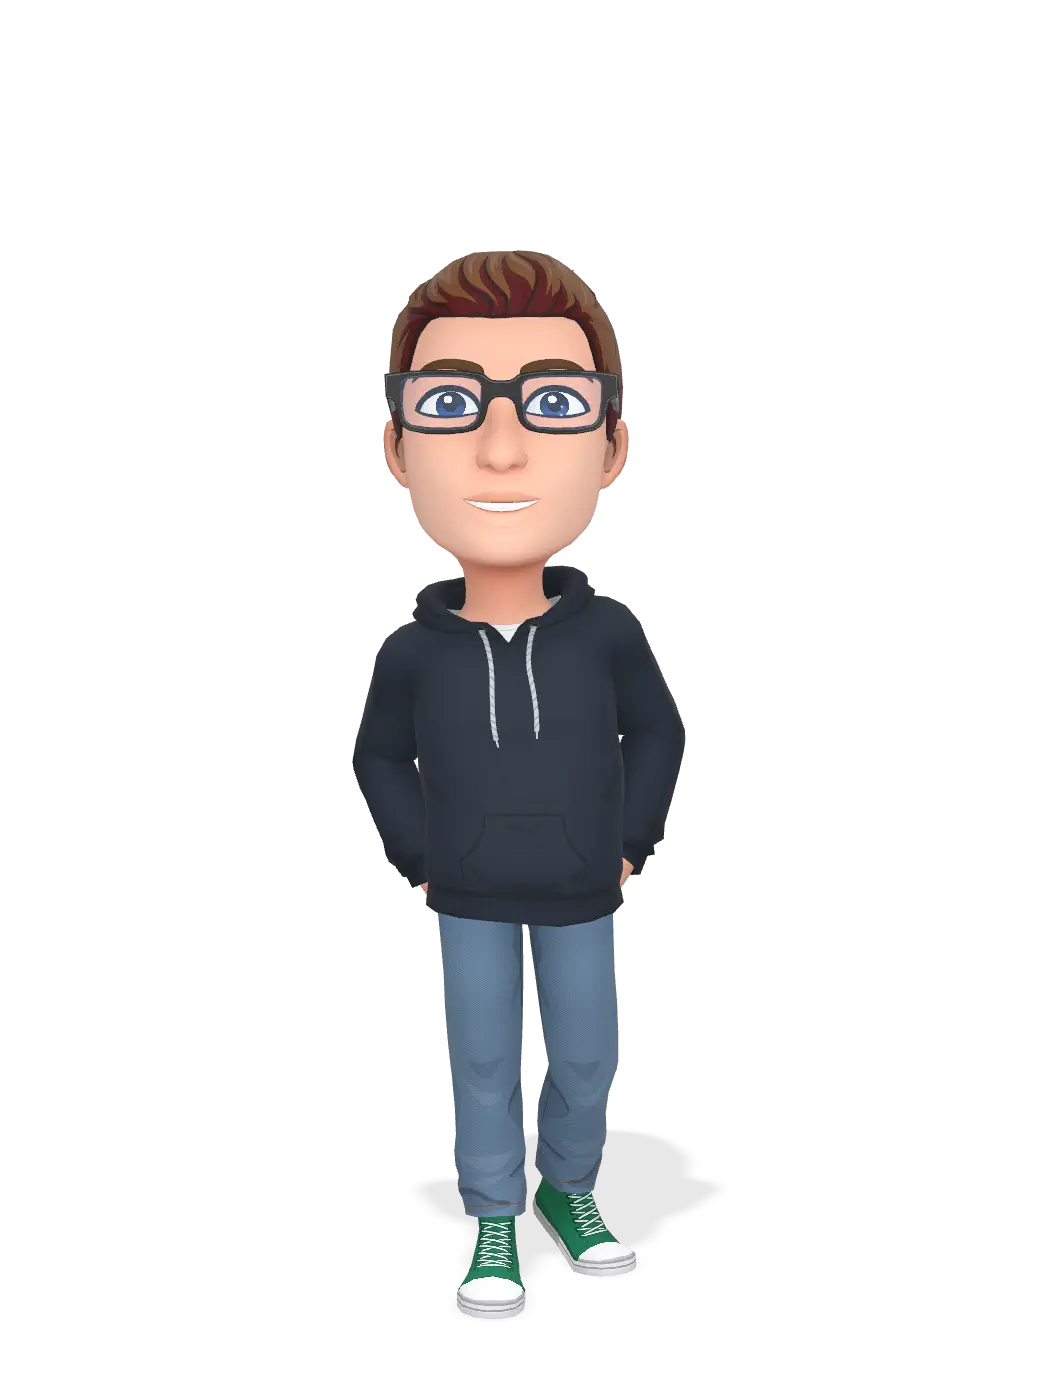 3D Bitmoji for lukeluke2001 avatar